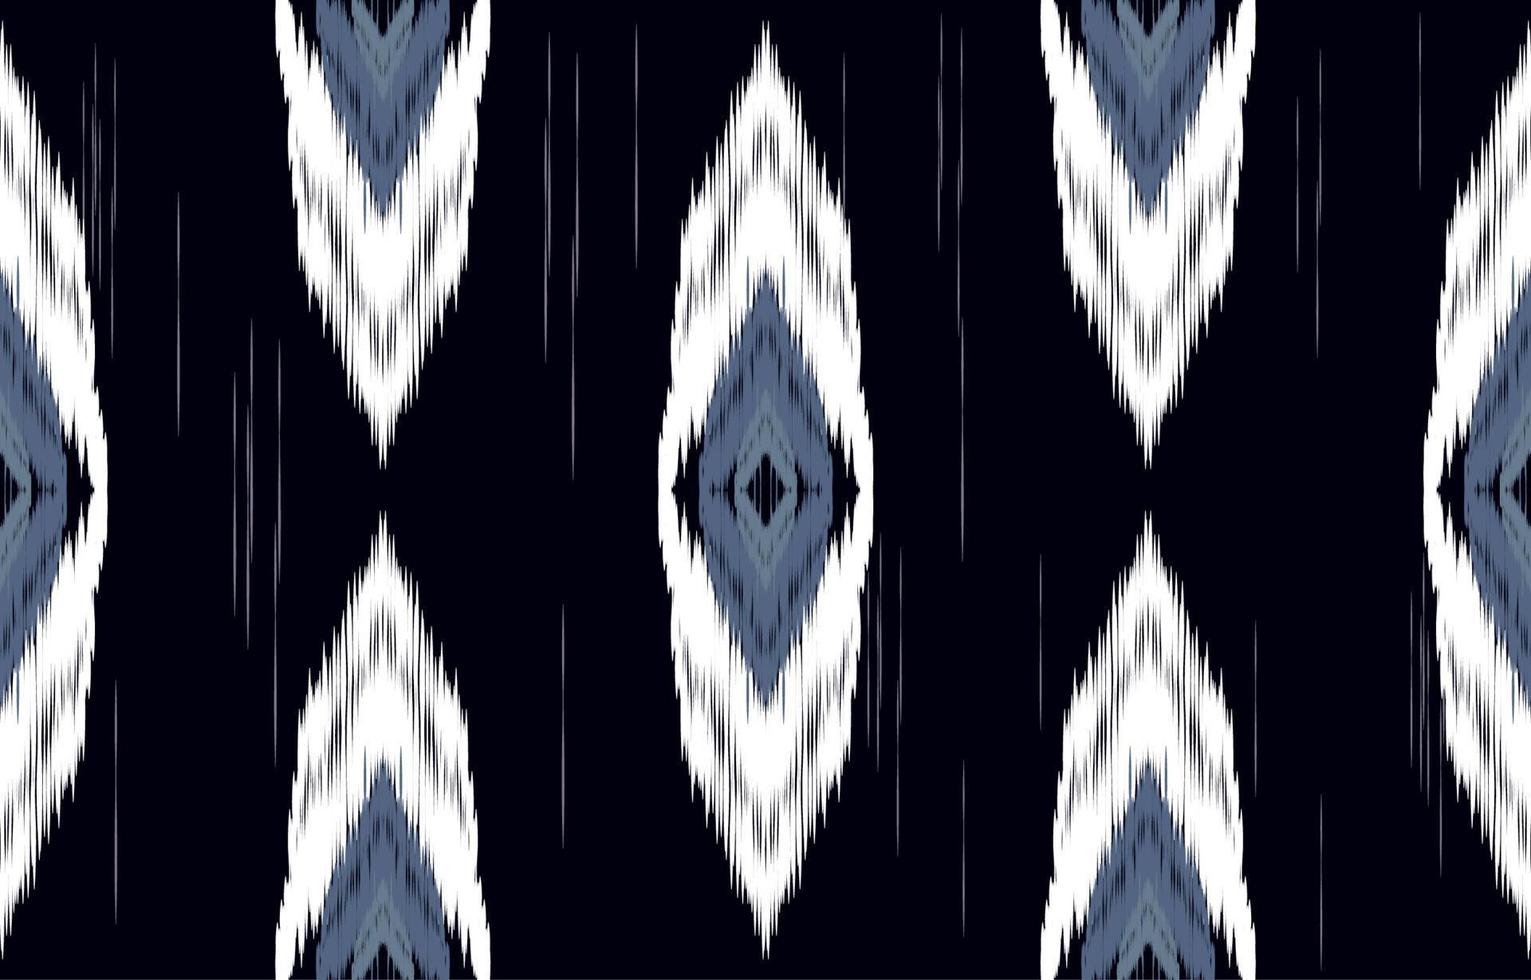 clásico azul y blanco ikat de patrones sin fisuras geométrico étnico oriental bordado tradicional style.design para fondo, alfombra, estera, papel pintado, ropa, envoltura, batik, tela, ilustración vectorial. vector